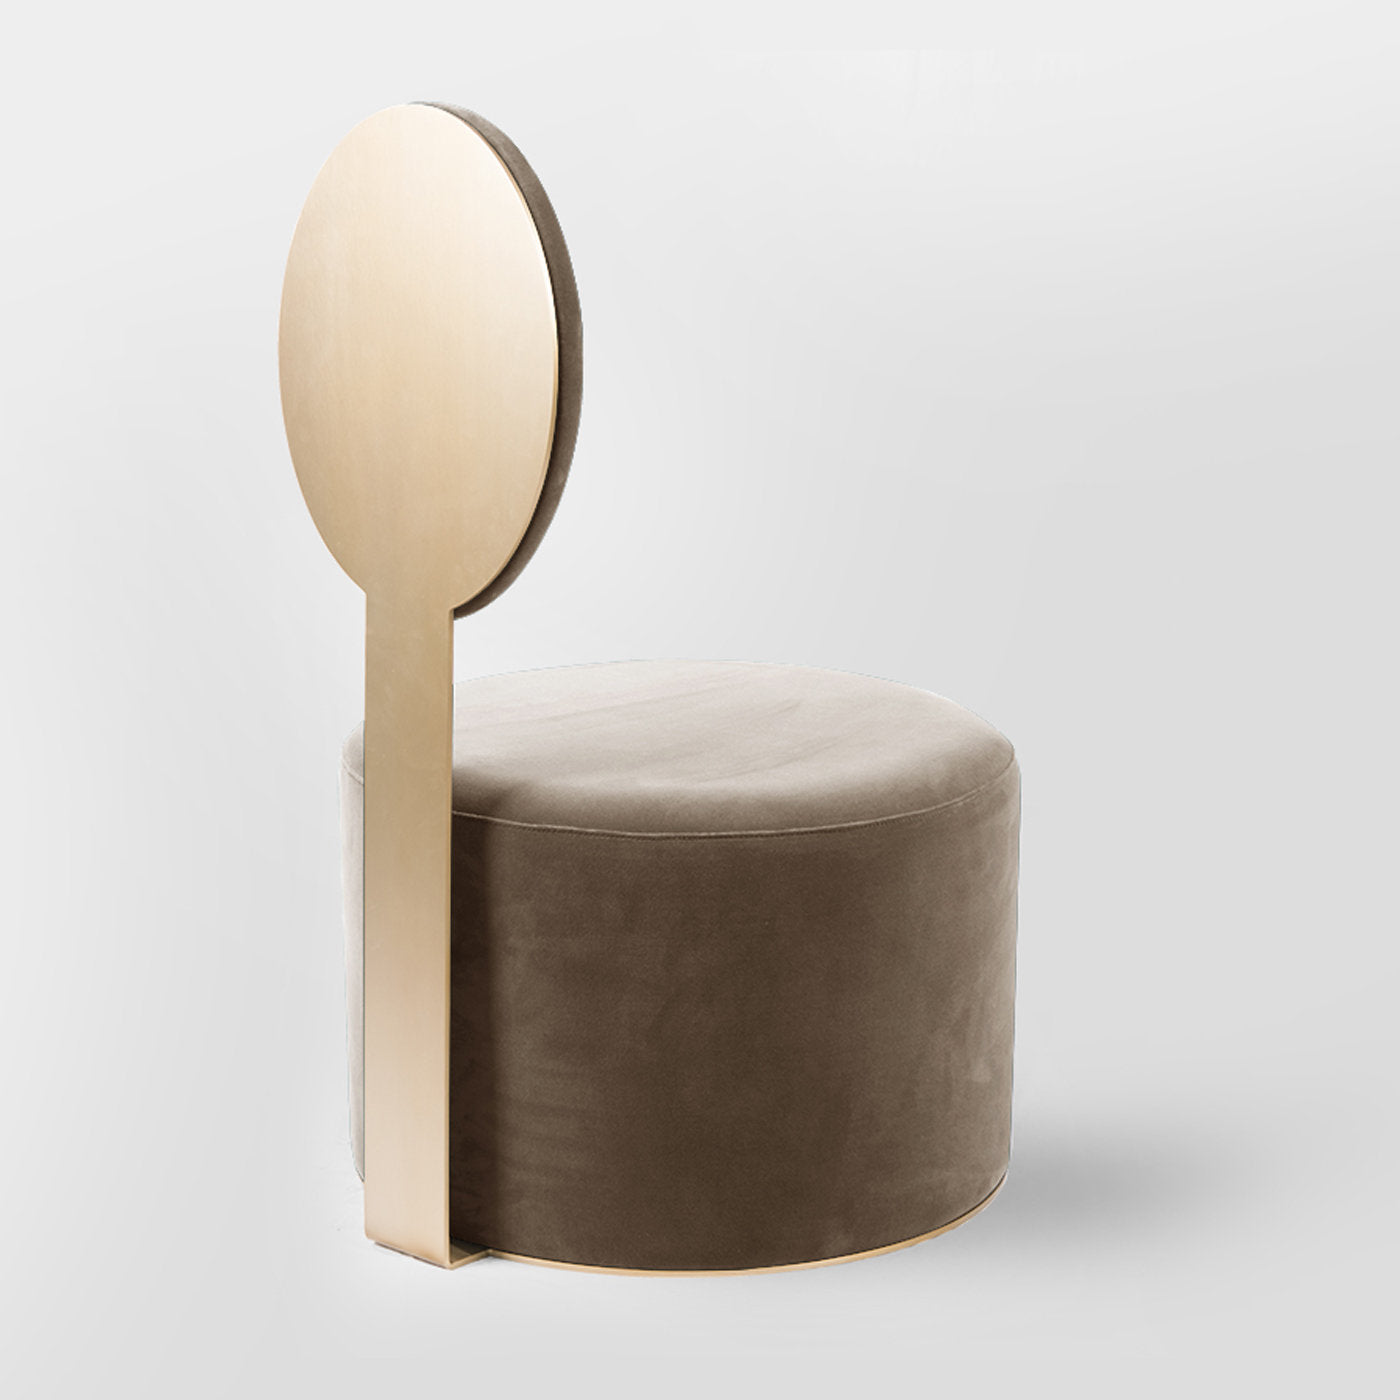 Pop Beige Chair by Artefatto Design Studio - Alternative view 2